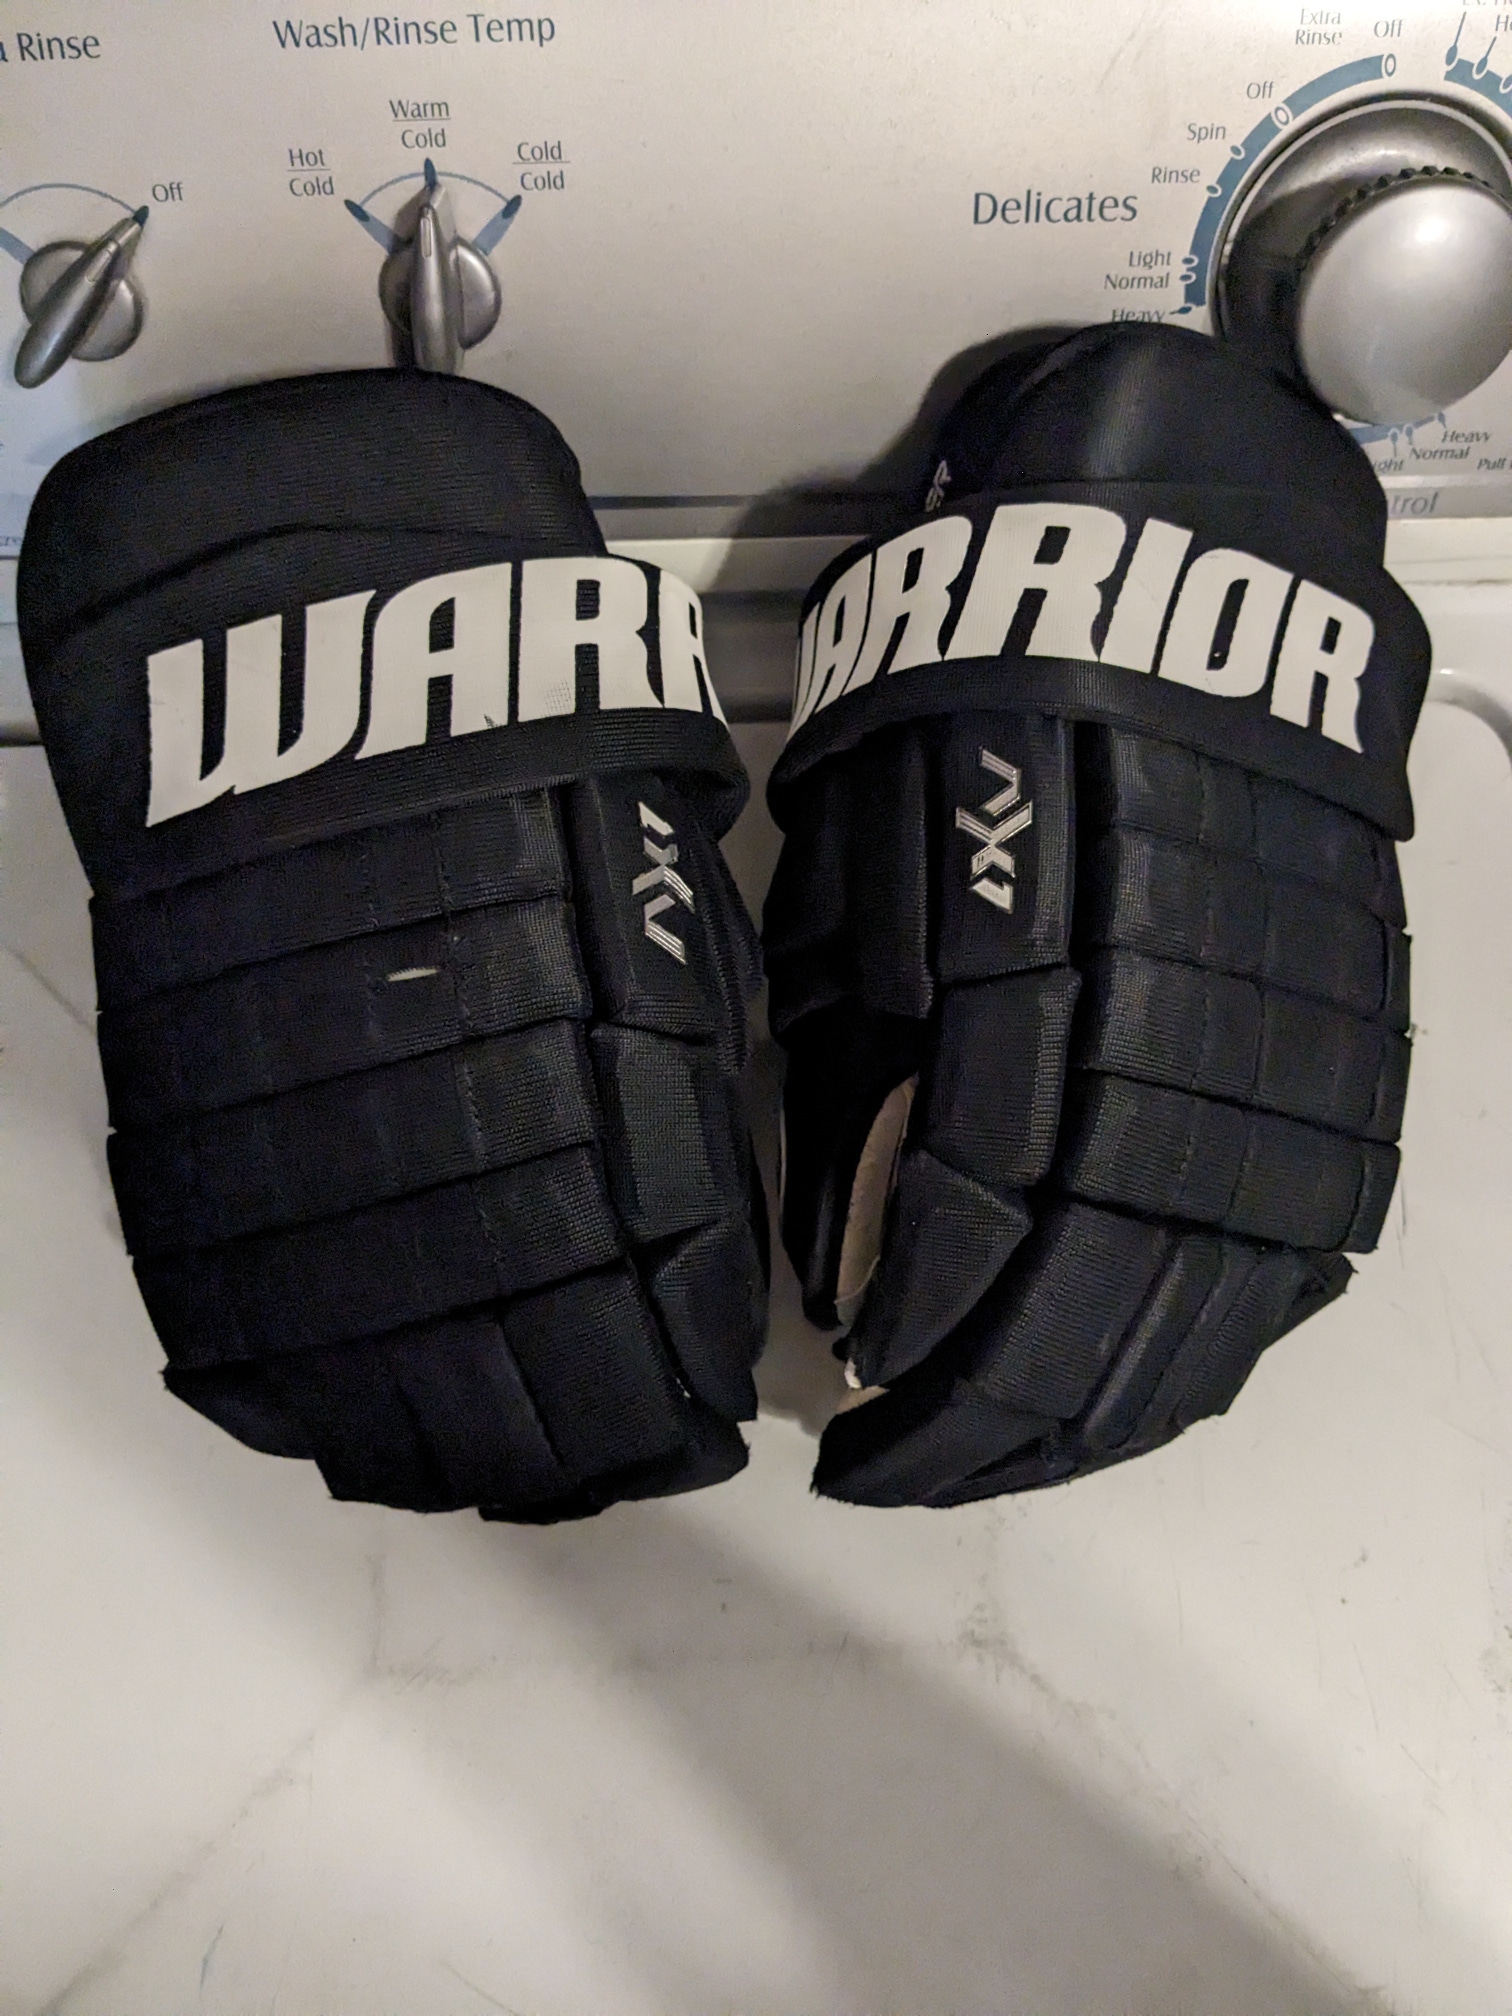 Warrior Franchise Gloves 13" Pro Stock